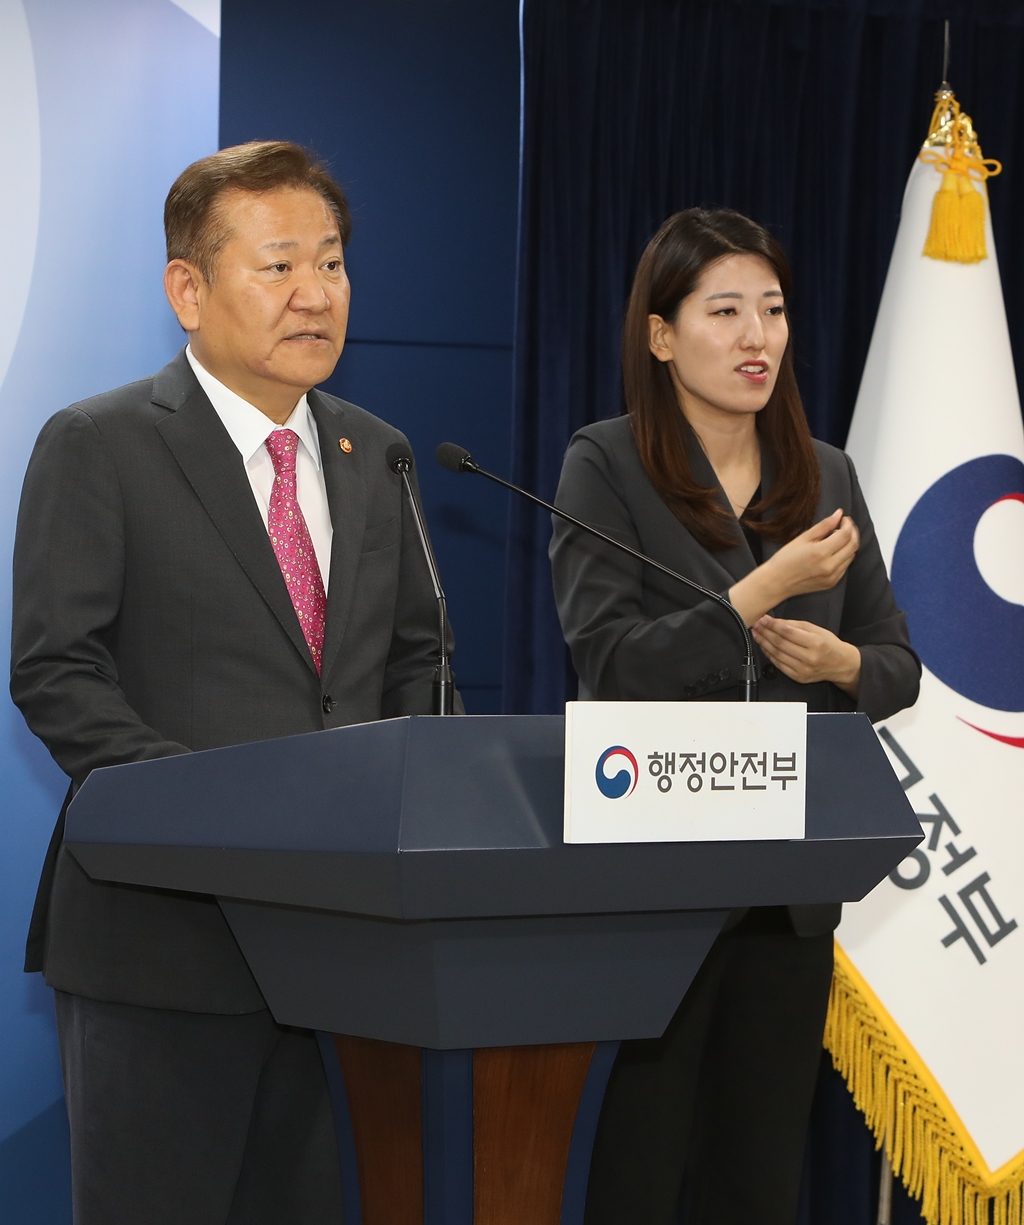 이상민 행정안전부 장관이 17일 오후 서울 종로구 정부서울청사에서 경찰청장 후보자의 임명 제청과 관련해 브리핑하고 있다.